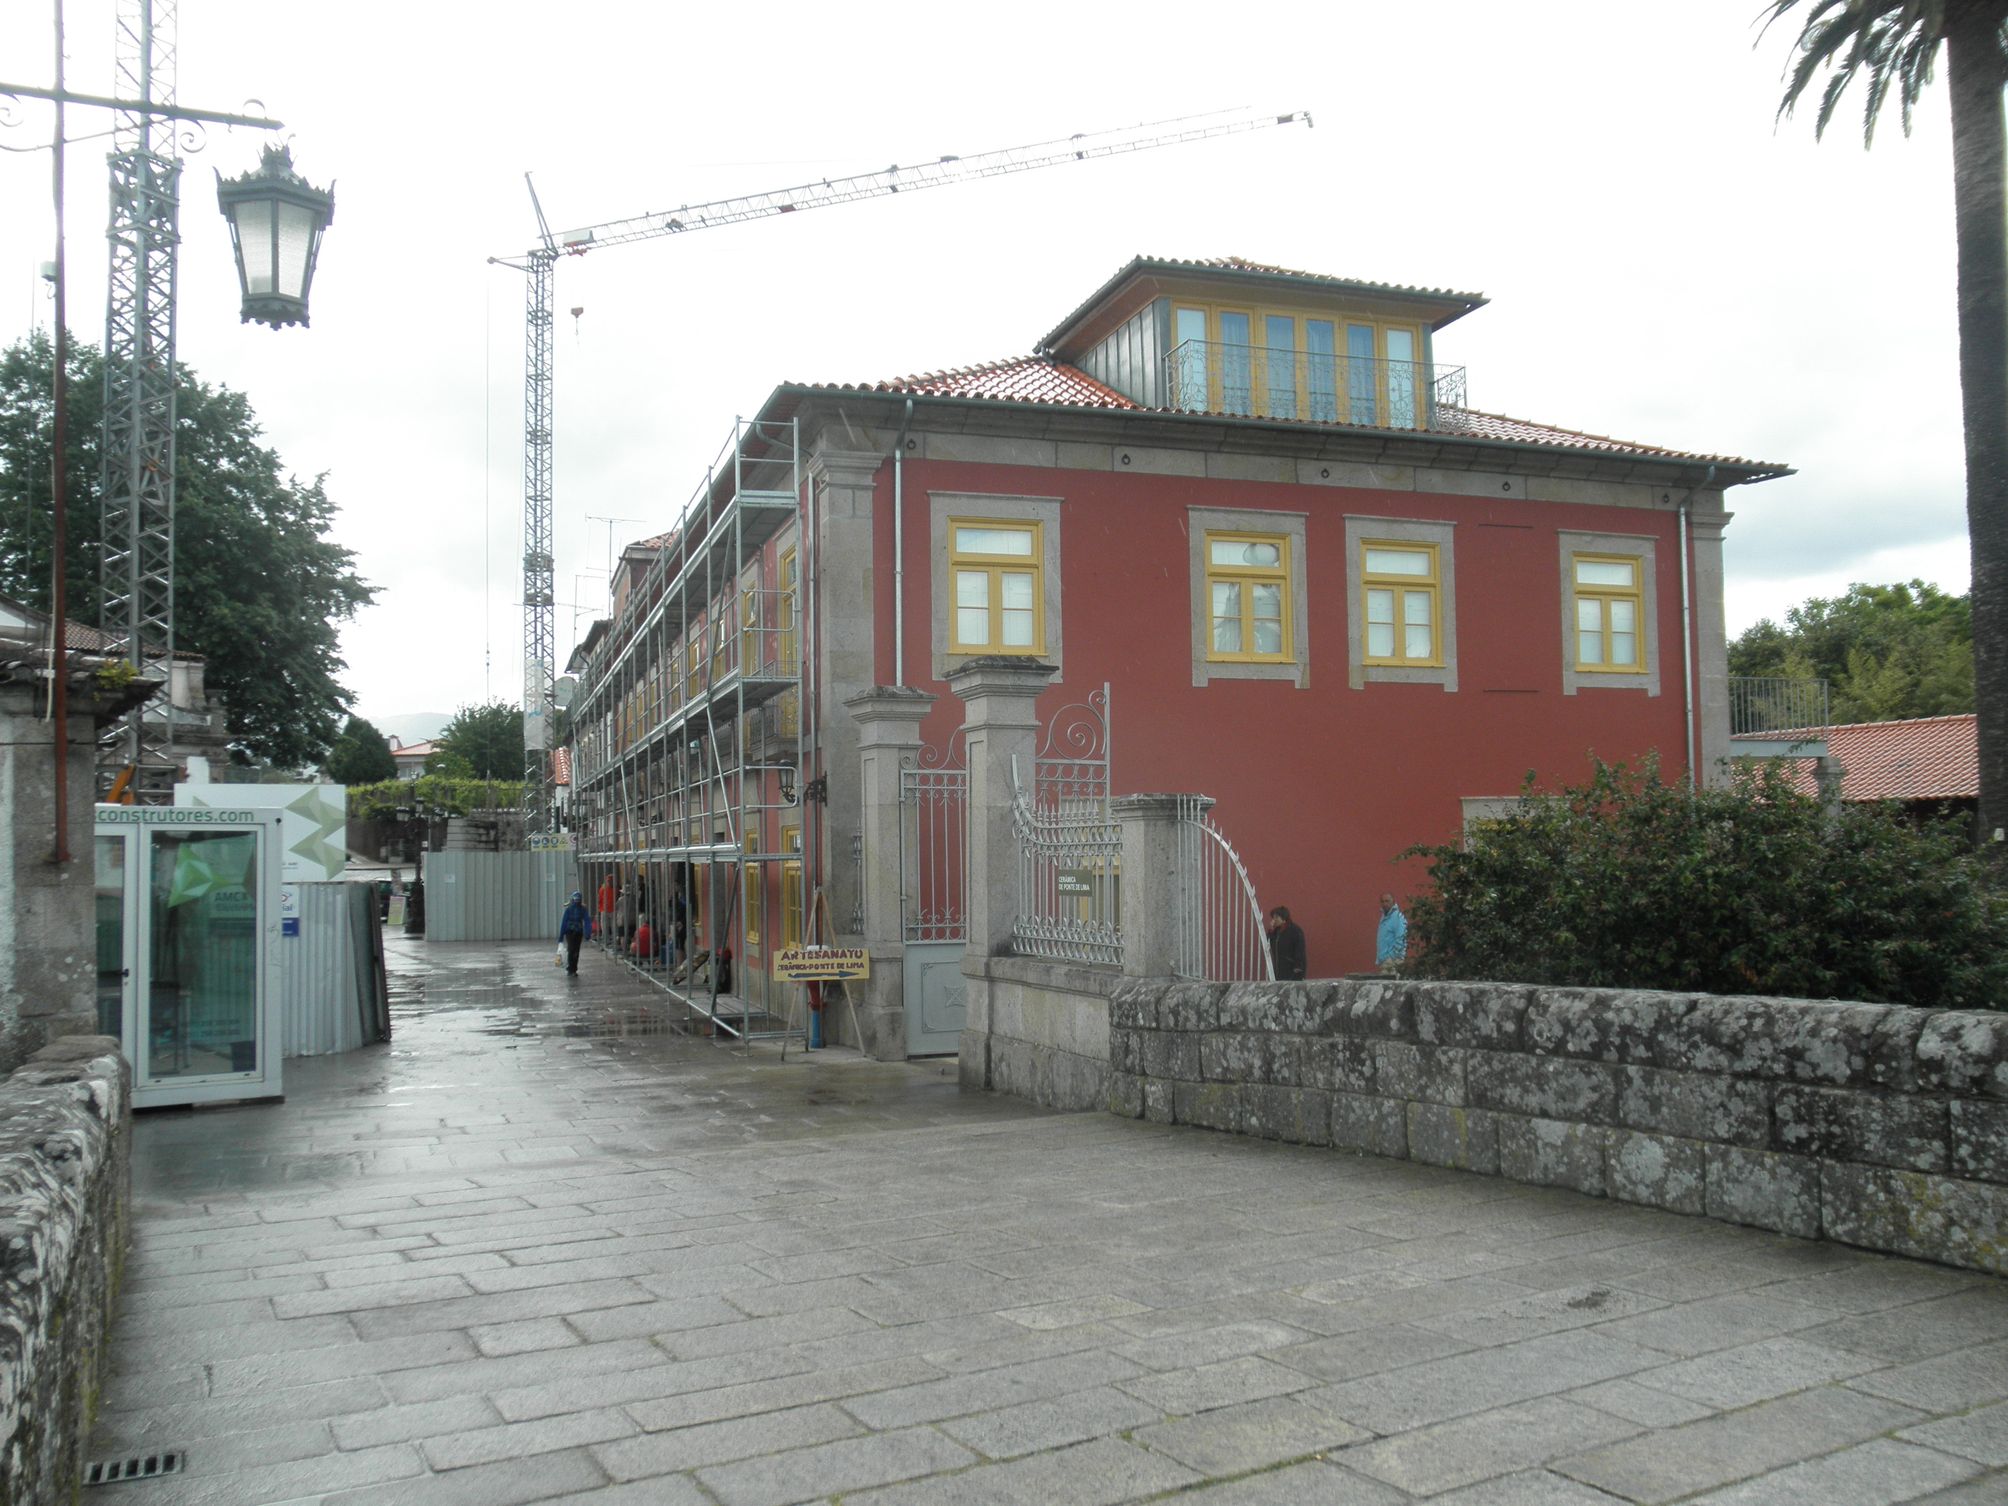 Ubytovna v Ponte de Lima je nově zrekonstruovaný starý palác